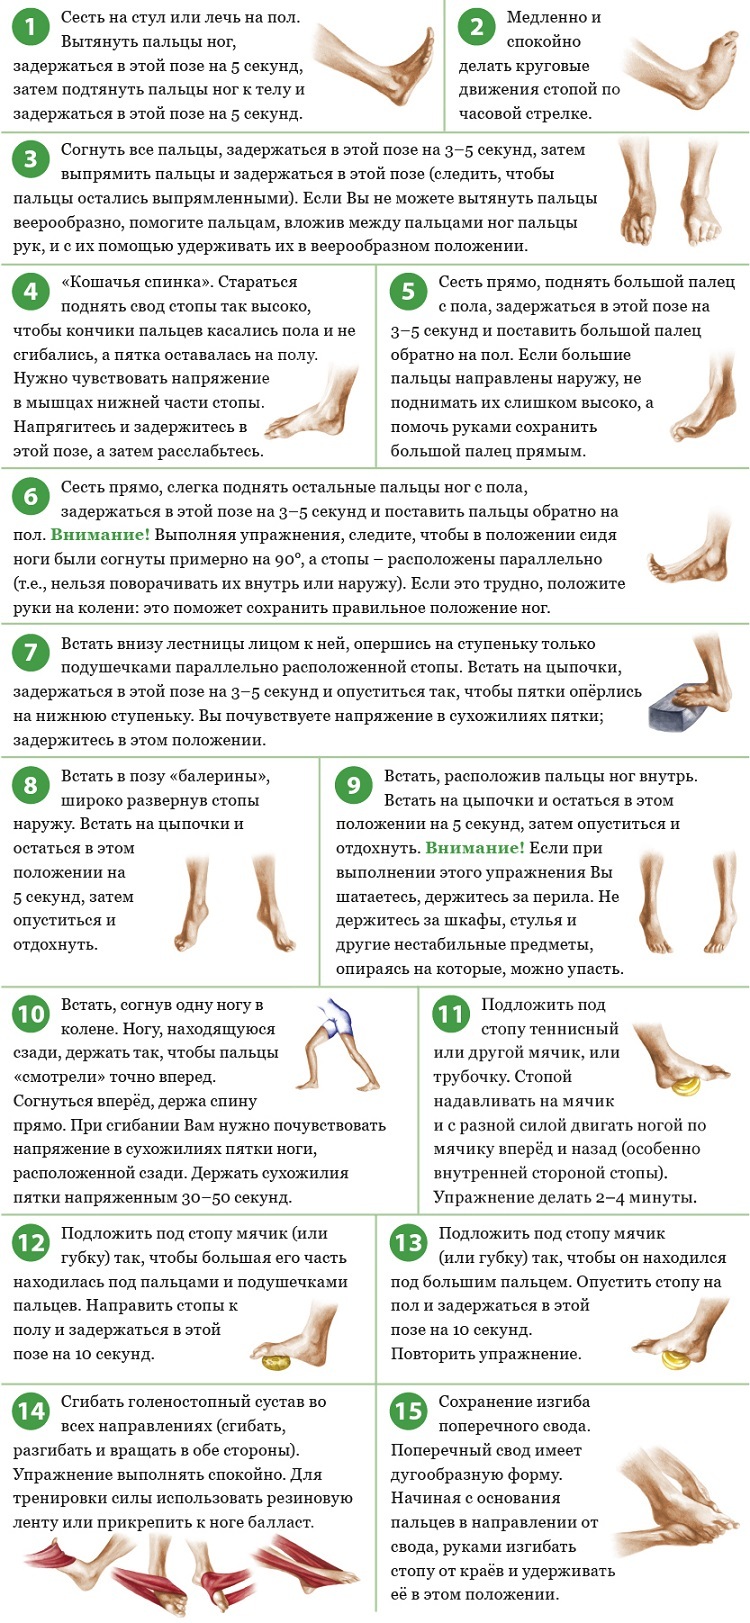 Упражнения для пальцев стопы. Упражнения для голеностопного сустава. Упражнения укрепляющие голеностопный сустав. ЛФК стопы и голеностопного сустава. Упражнения для стопы ног.